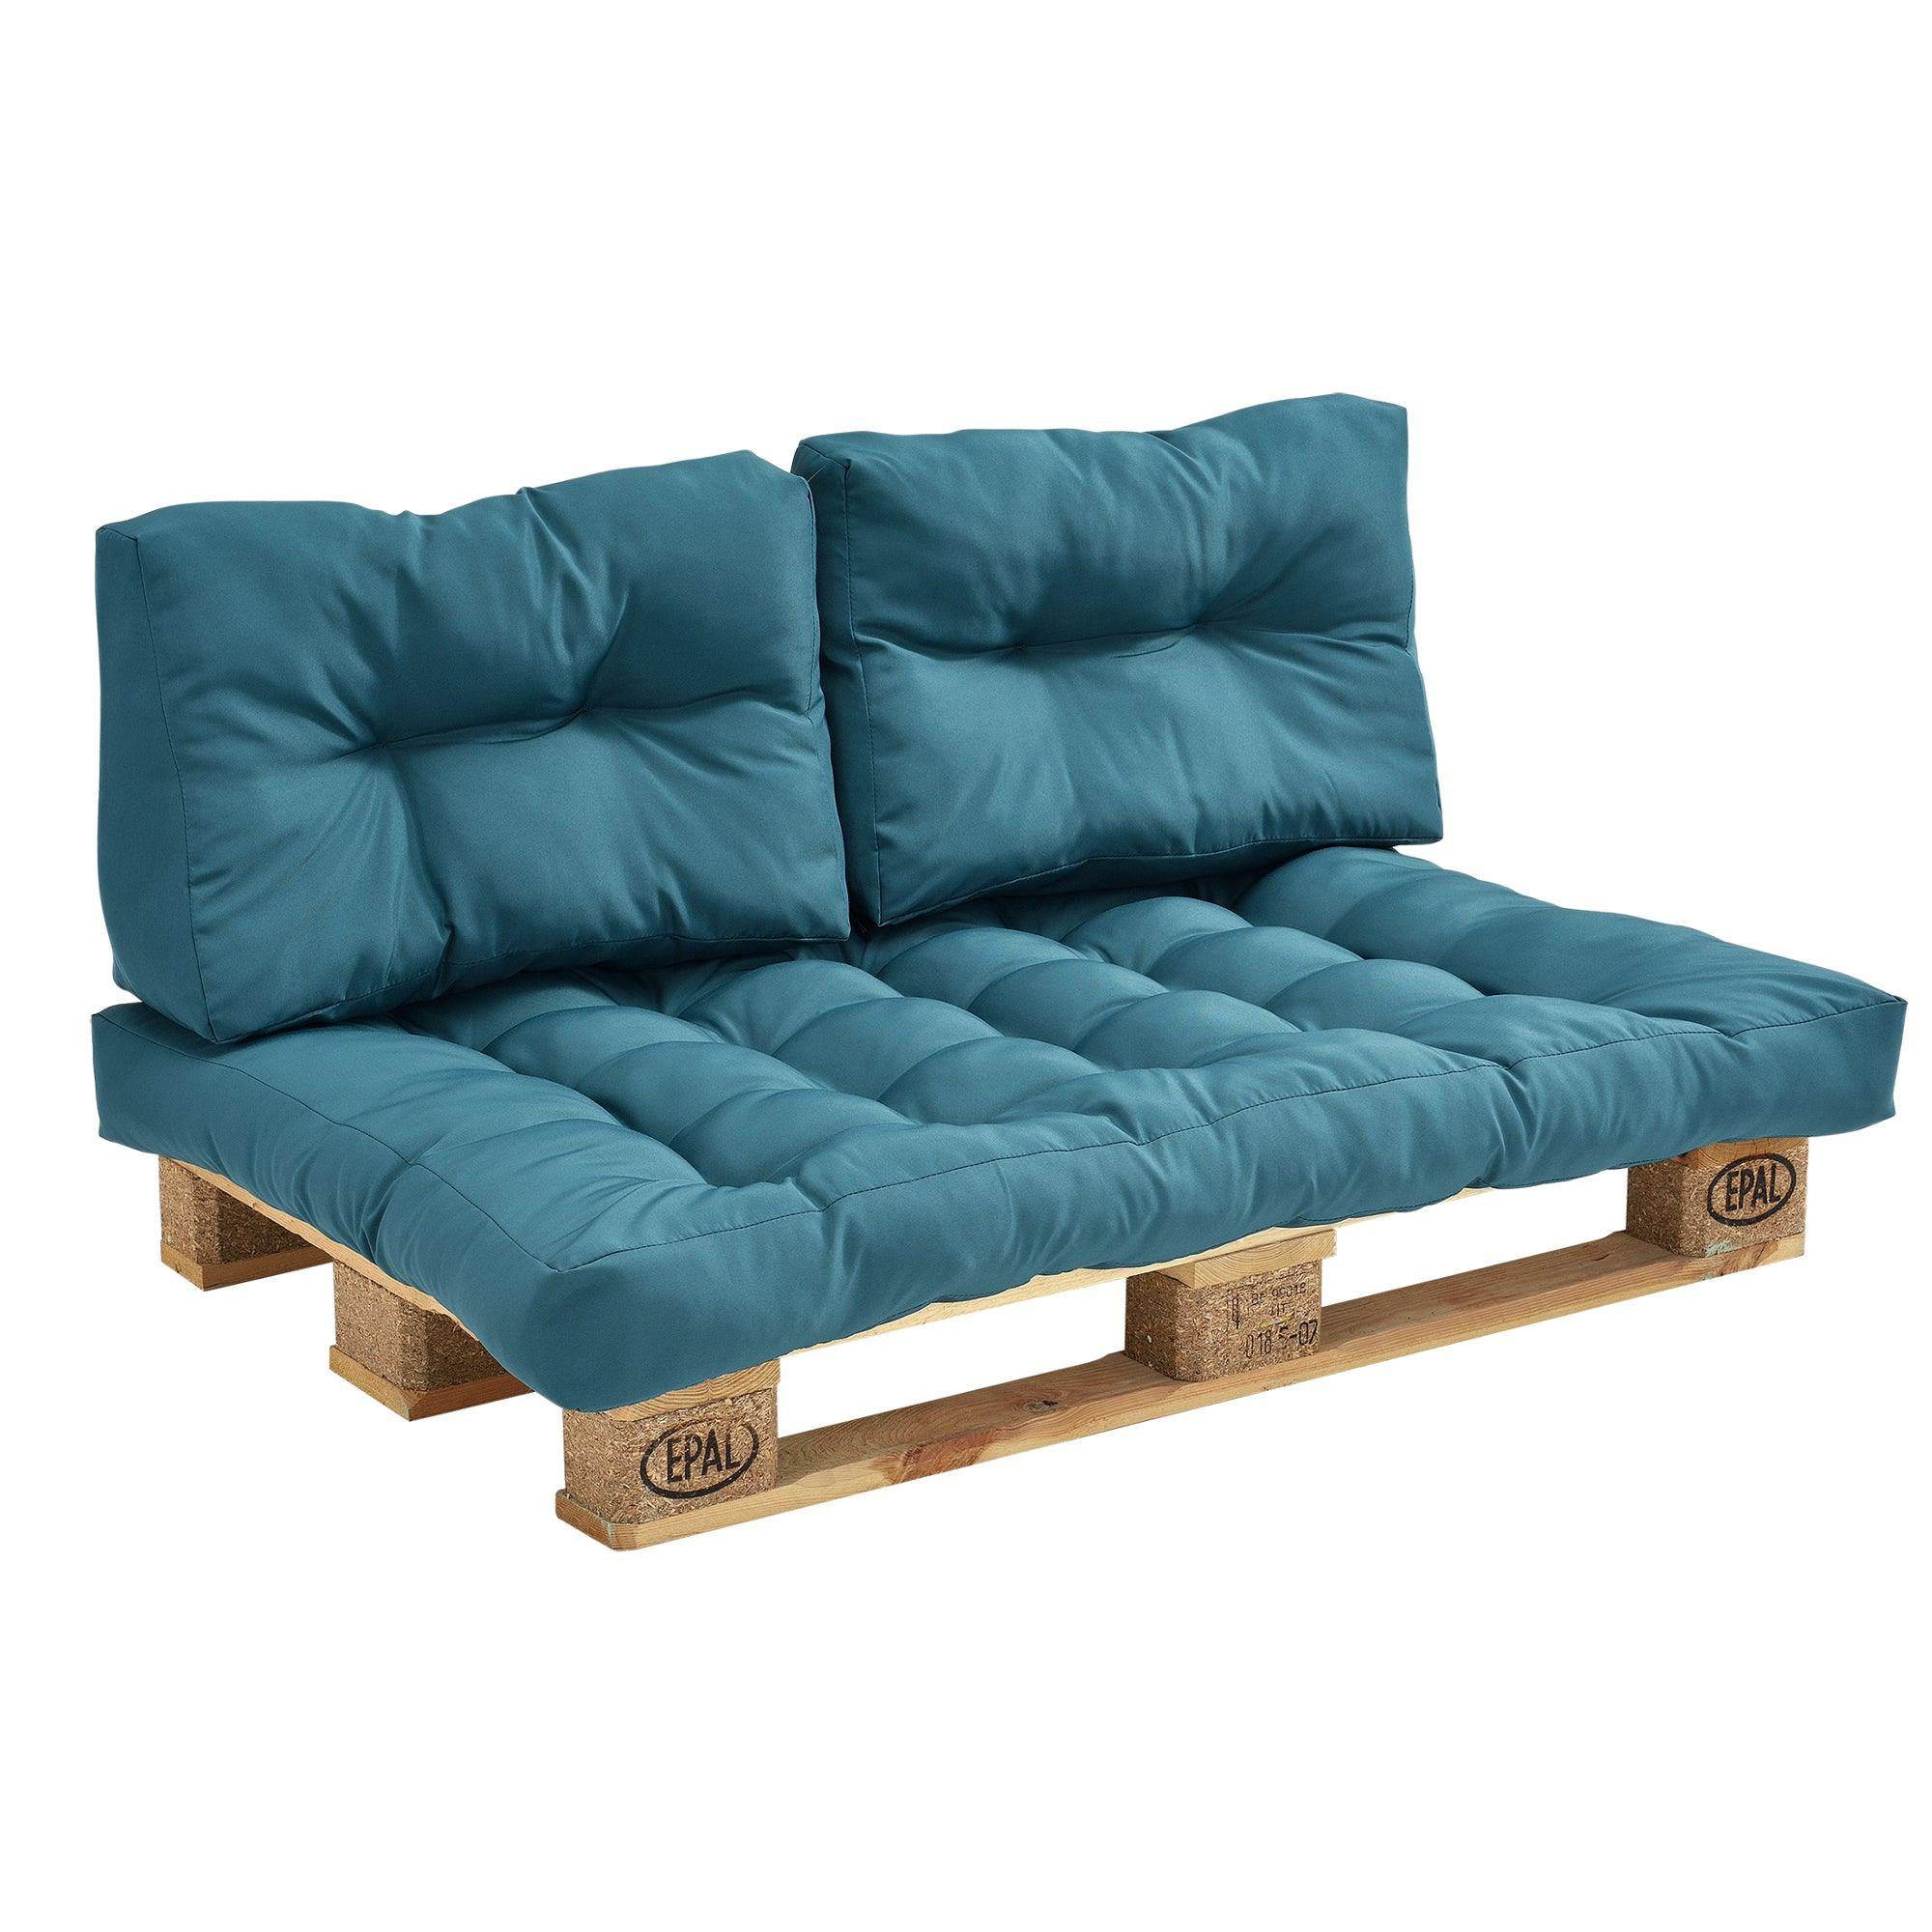 Coussin de dossier pour canapé d'euro palette rembourrage meuble turquoise  03_0000151